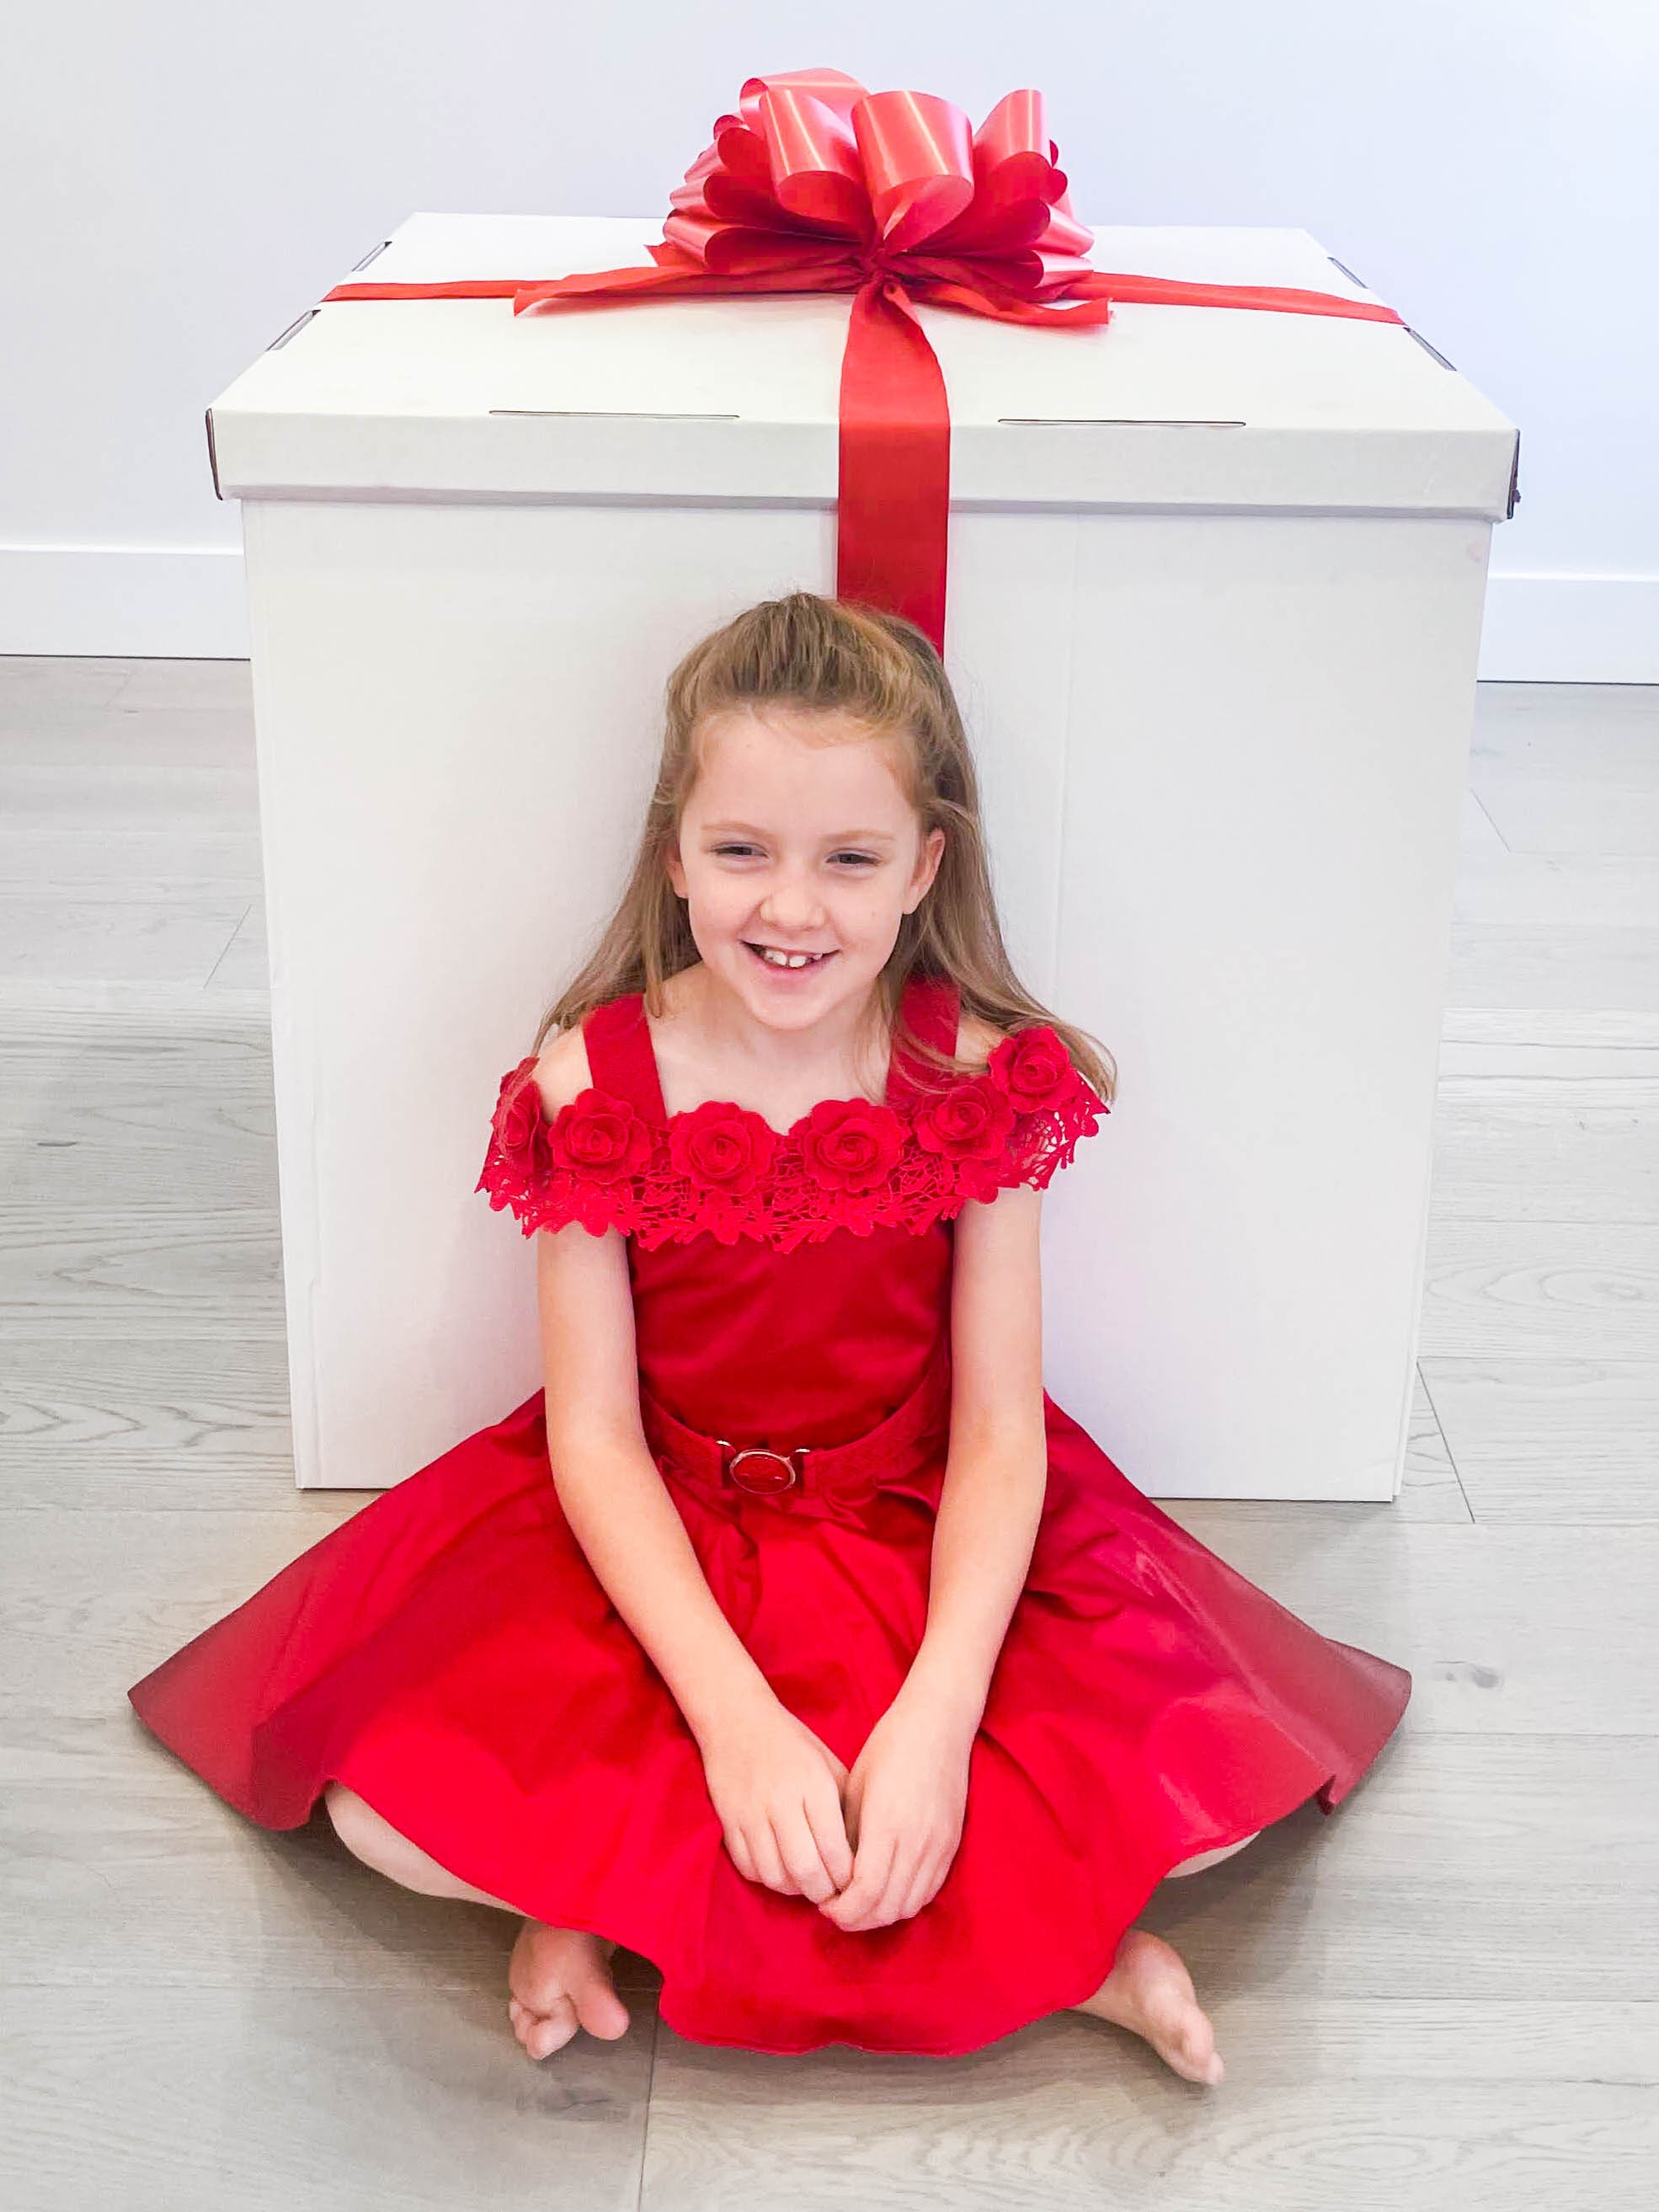 Jumbo Gift Box - the original oversized gift box. 28 x 28 x 28 inches